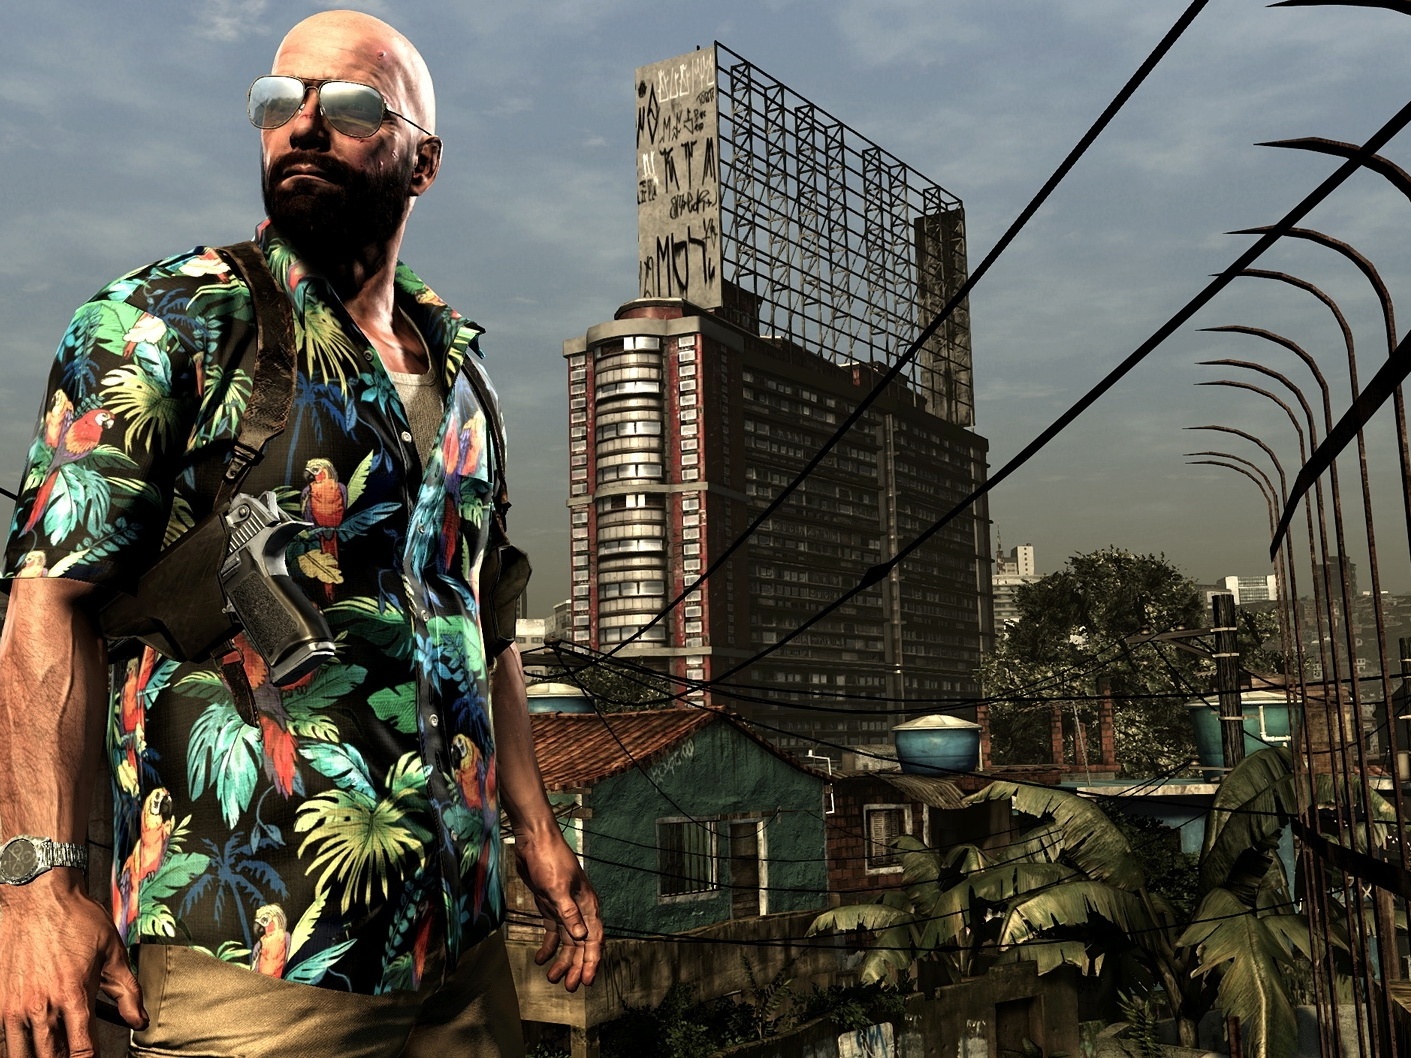 Cinco razões para escolher Max Payne 3 e não sua alma gêmea no dia